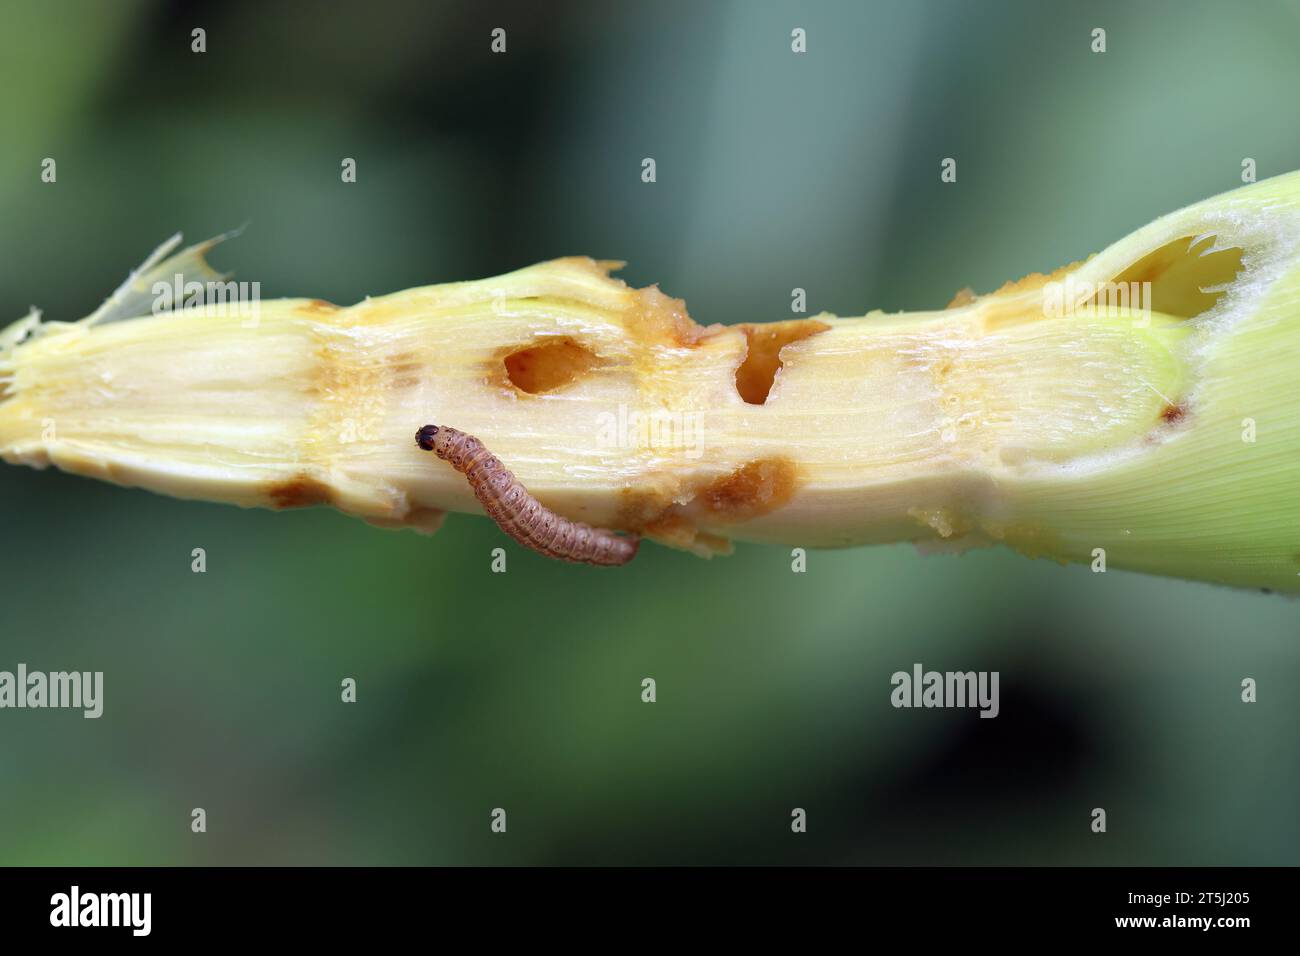 Caterpillar della trivella o della trivella del mais europea o della trivella o ad alto volantino (Ostrinia nubilalis) su pannocchie di mais. È una falena della famiglia Crambidae. Foto Stock